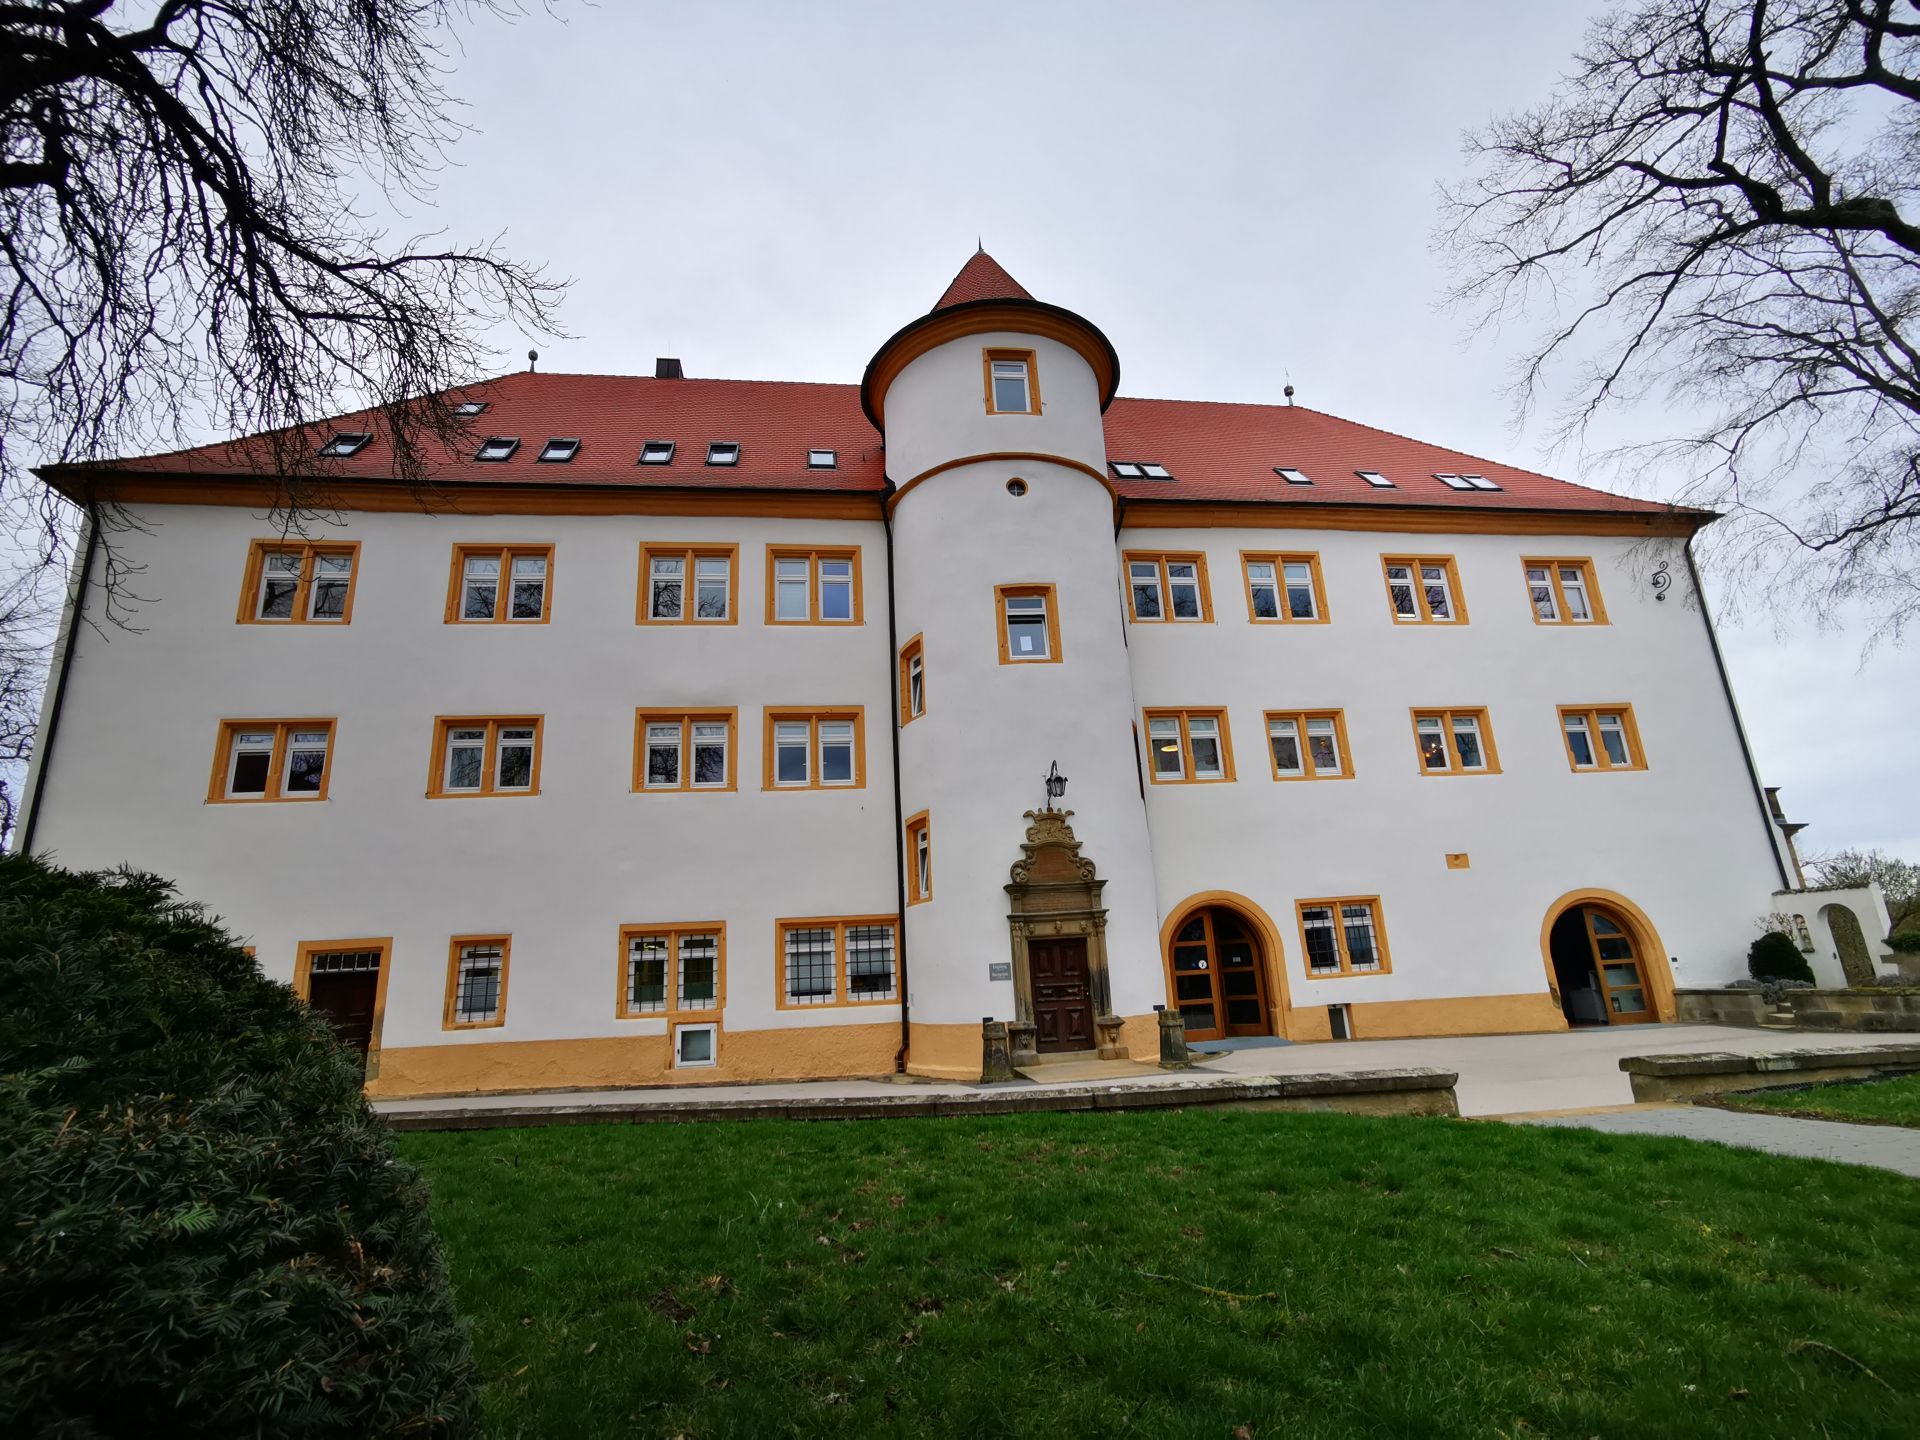 Централата на Hohenstein е разположена в бивш замък